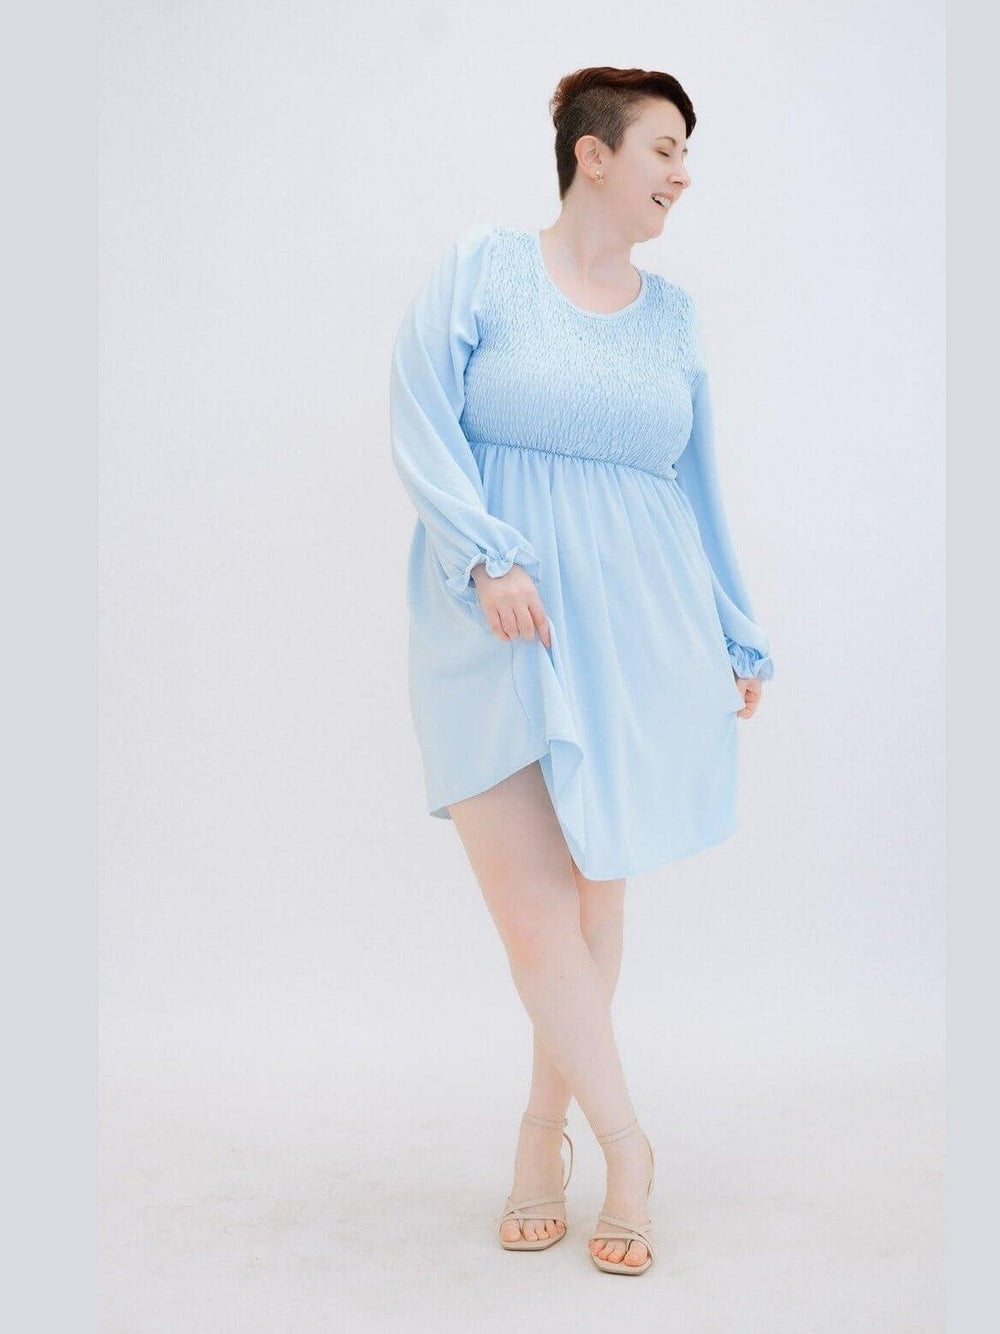 Curvy Blue Sky Dress with Smocking